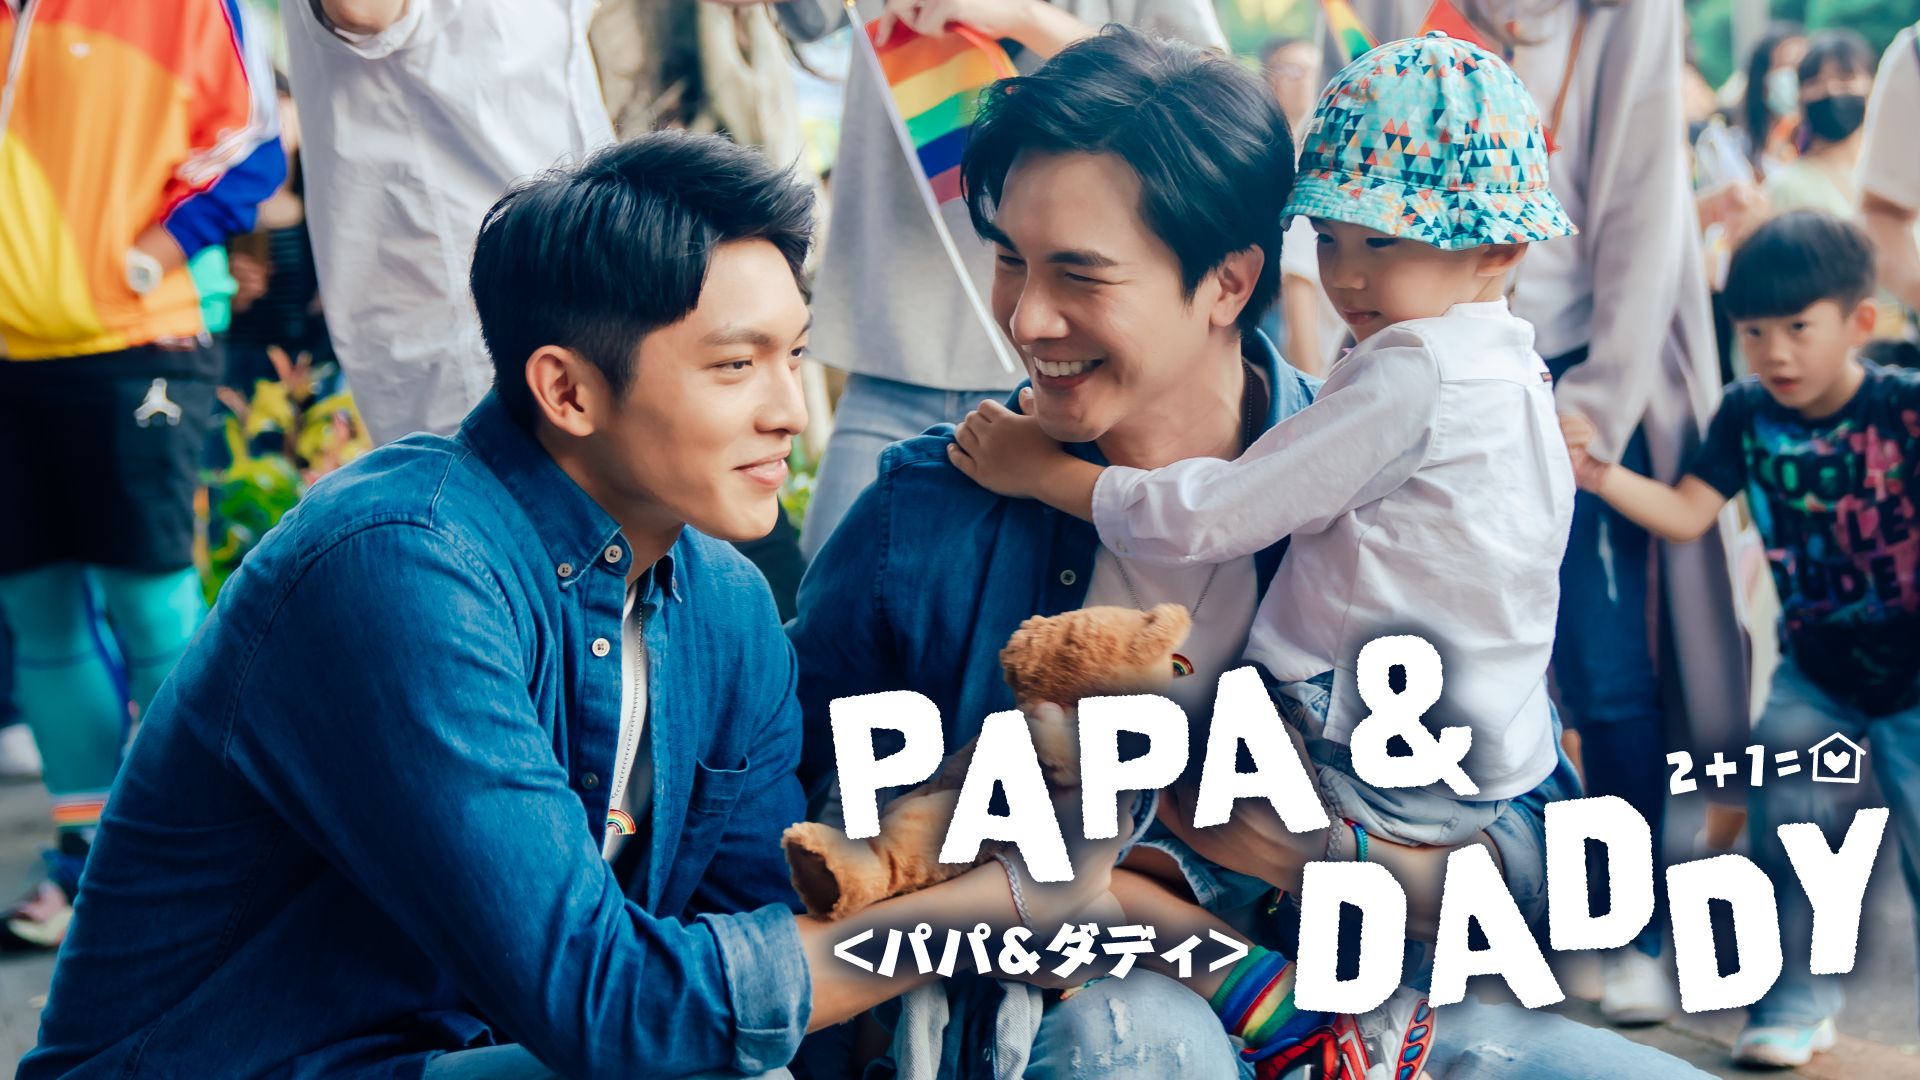 PAPA & DADDY <パパ&ダディ>